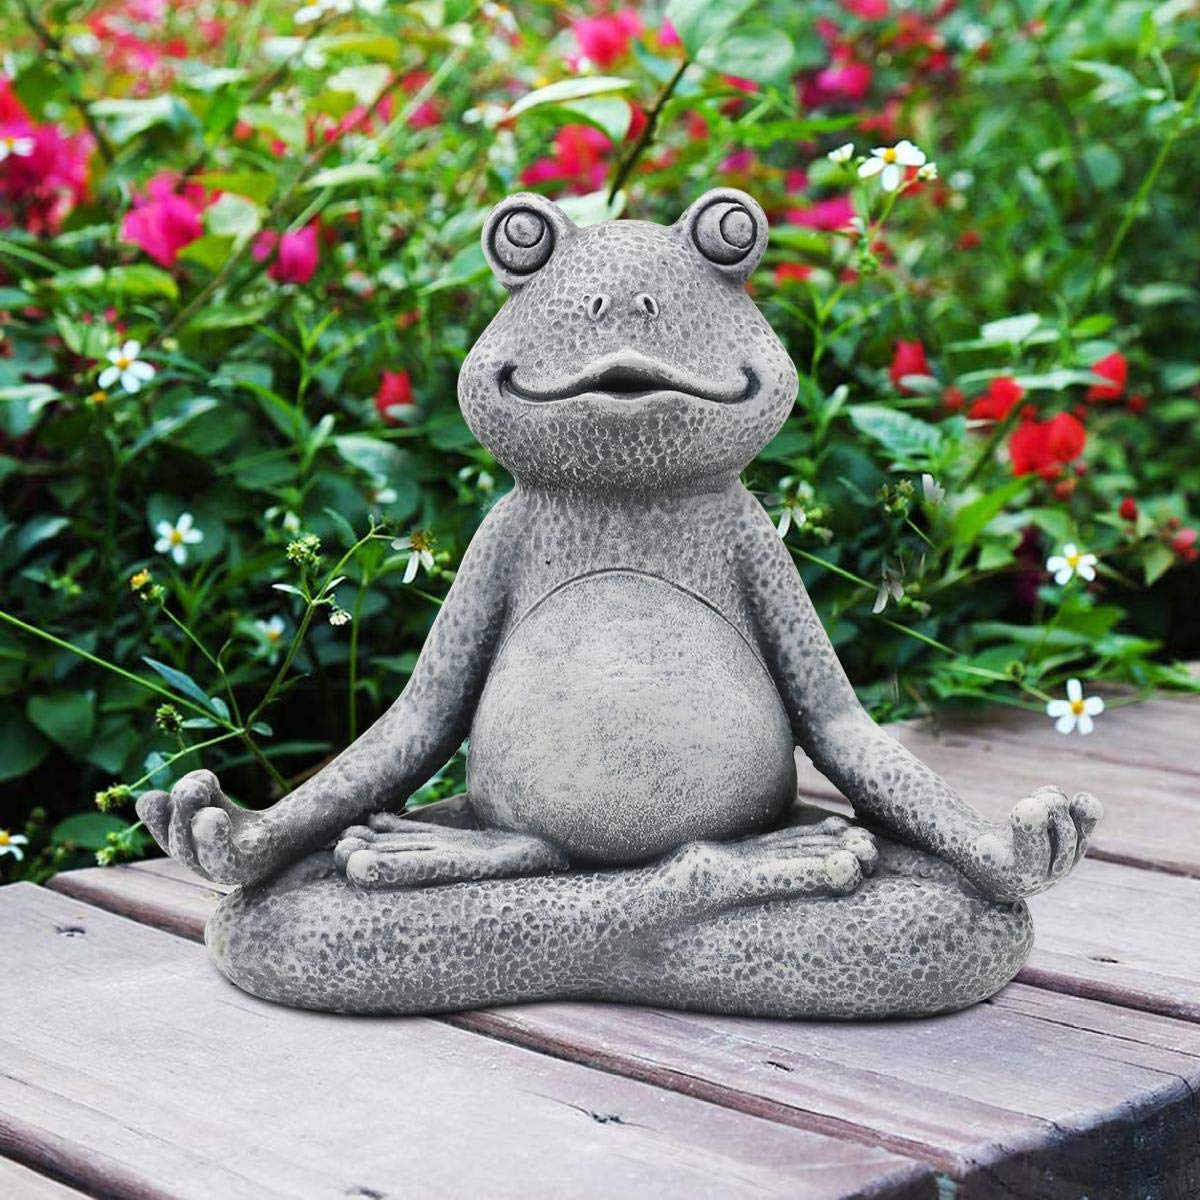 Nacome Meditating Frog Miniature Figurine,Zen Yoga Frog Garden Statue Ornament- Indoor/Outdoor Garden Sculpture for Fairy Garden